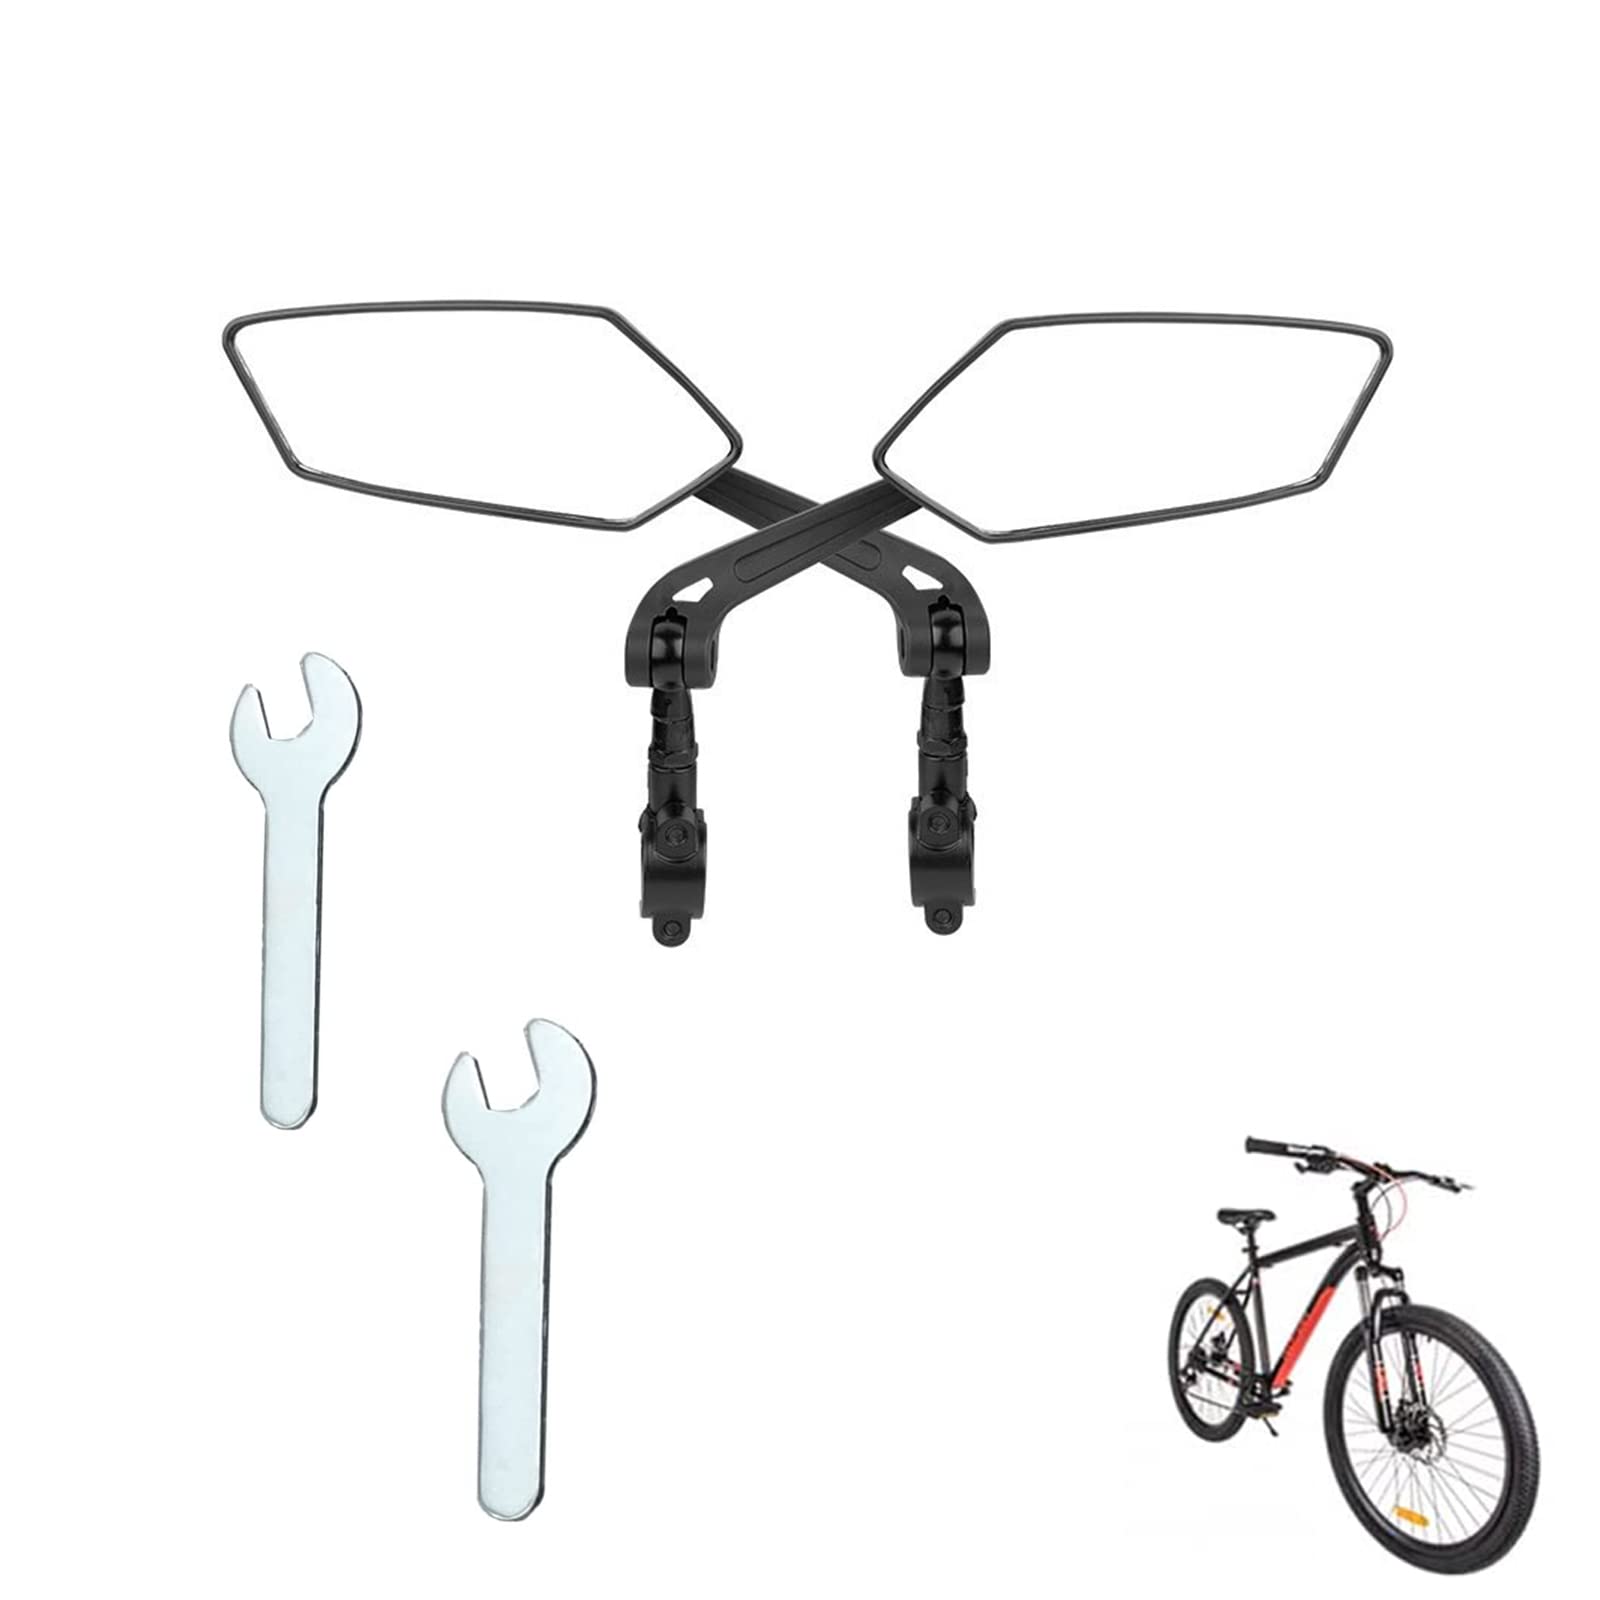 2 Stück Fahrrad Rückspiegel, 360° verstellbarer Fahrrad Spiegel für E-Bike & E-Scooter Lenker, Fahrradspiegel, Drehbarer Rückspiegel Fahrrad, Fahrradspiegel Links und Rechts für Mountainbike von Lhdfyqt